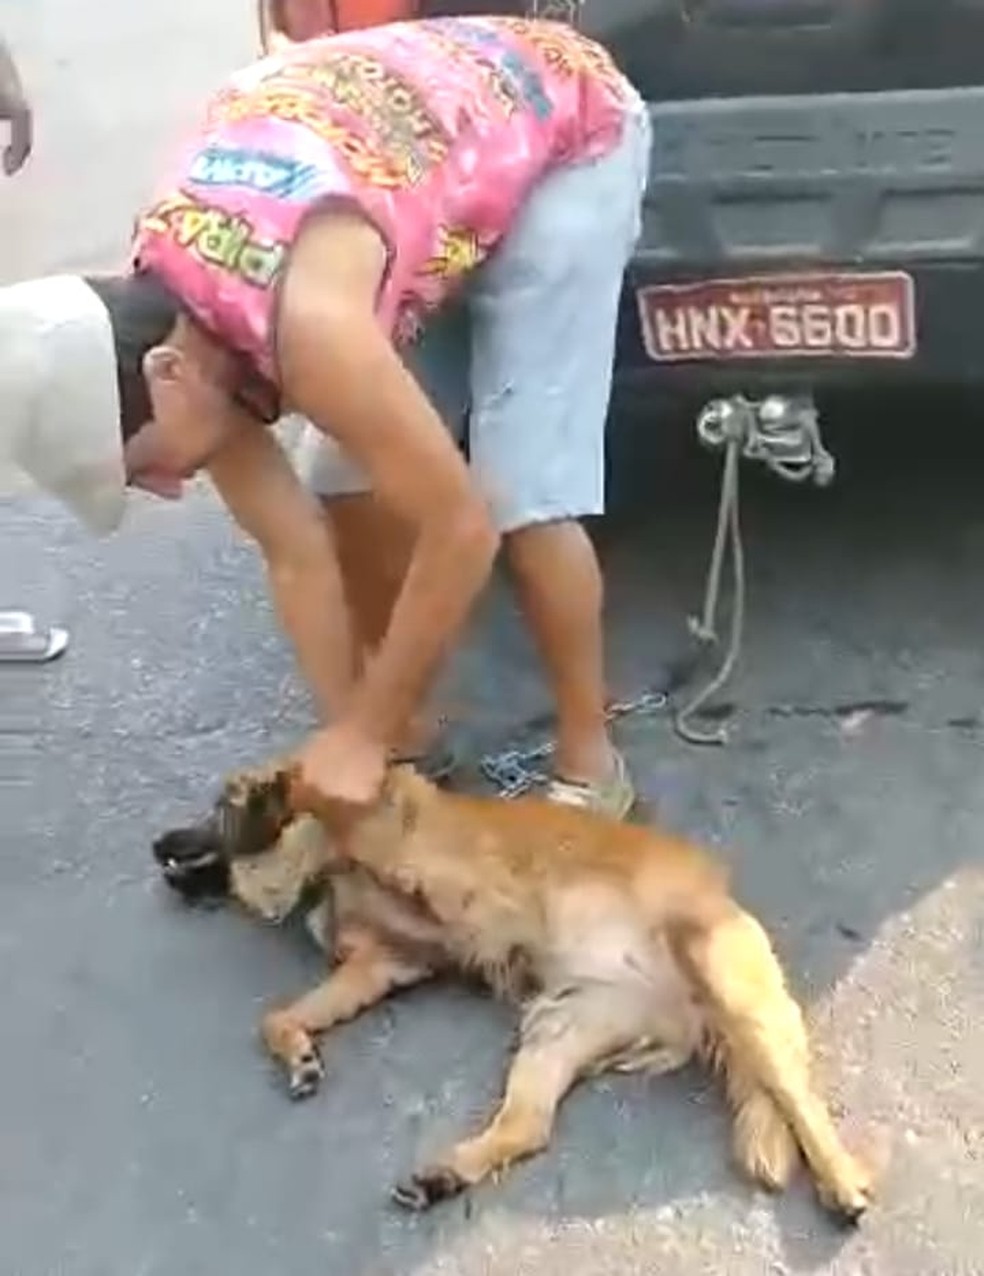 Vídeo: mulher denuncia homem a cavalo que puxava cachorro amarrado - Gerais  - Estado de Minas